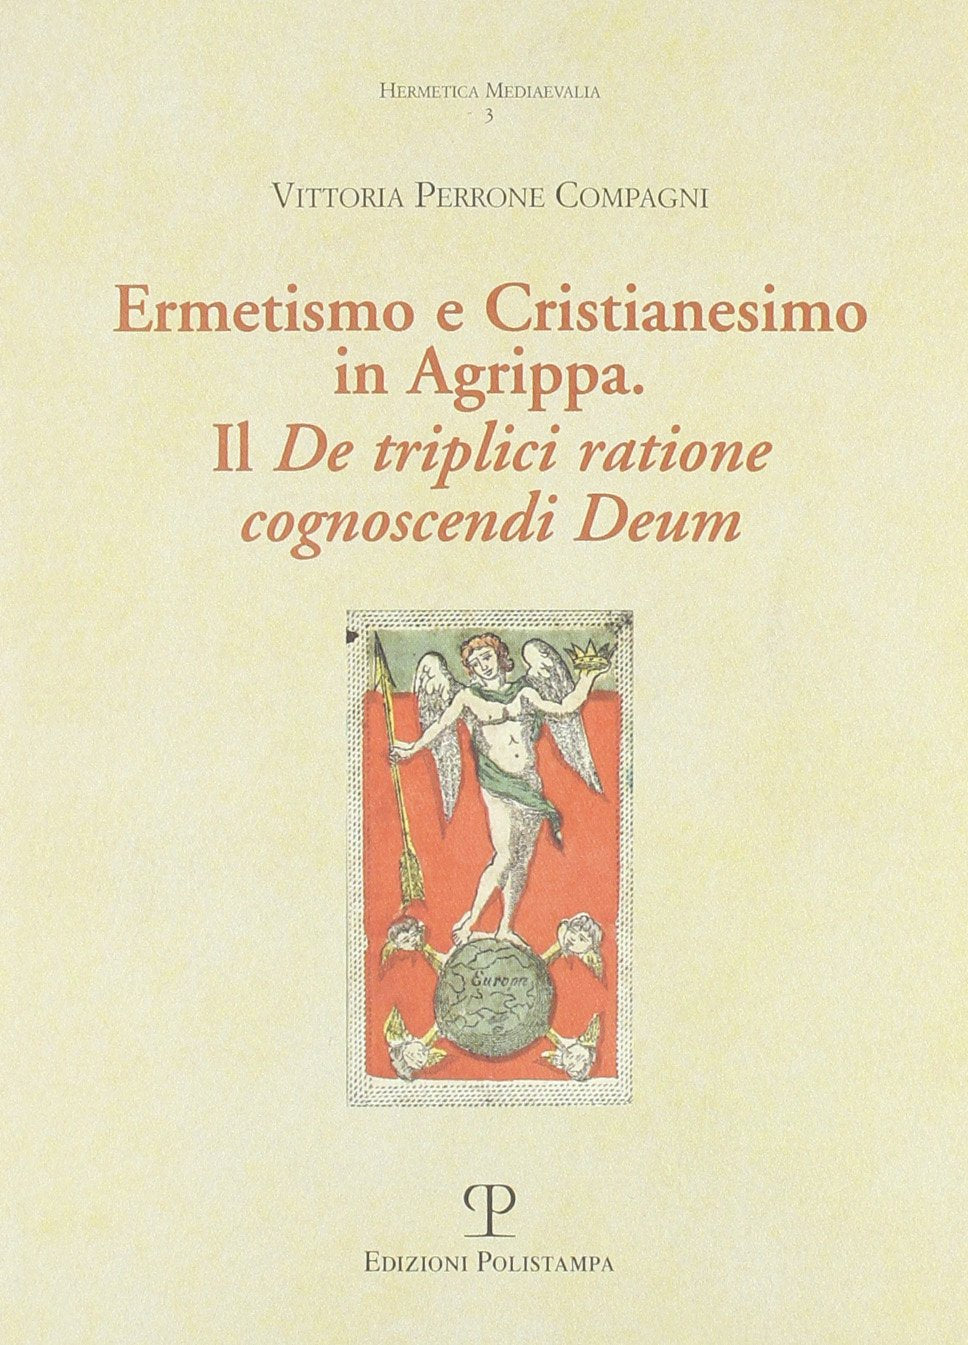 Ermetismo e Cristianesimo in Agrippa: il "De triplici ratine conoscendo Deum" - (testo latino, traduzione e commento a cura di Vittoria Perrone)